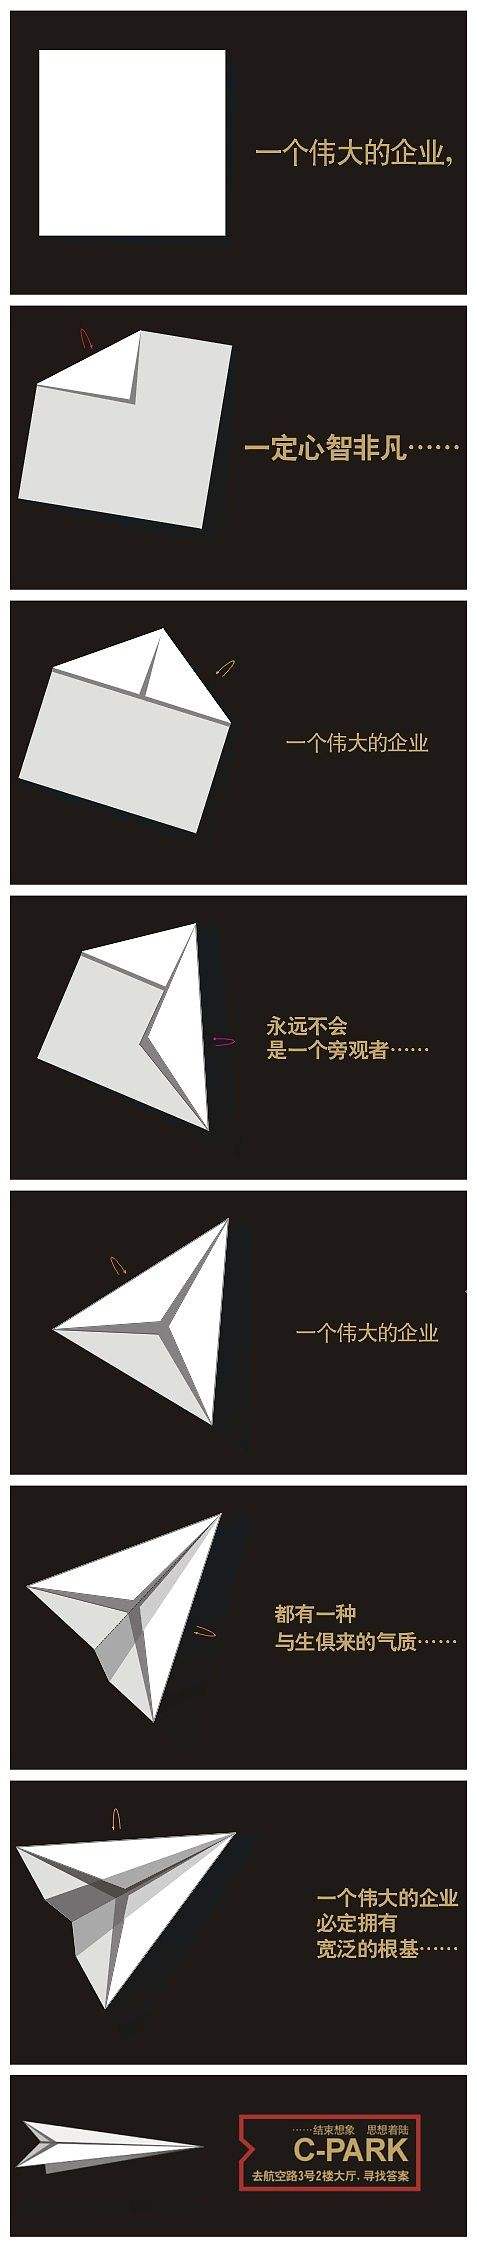 [纸飞机怎么用中国号码注册]纸飞机可以用中国号码注册吗